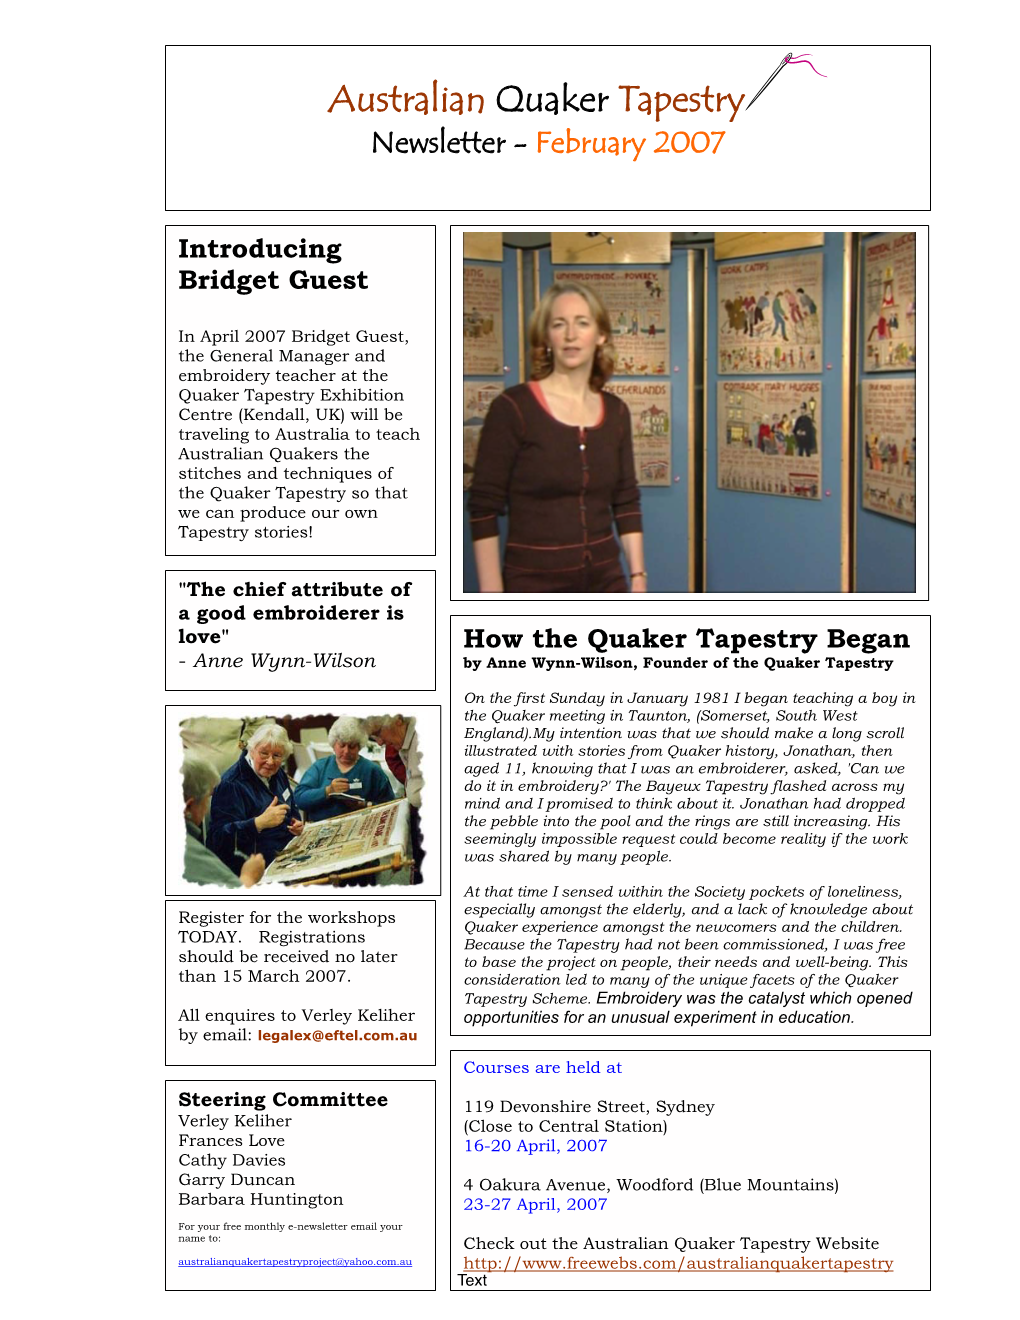 Australian Quaker Tapestry Newsletter - February 2007